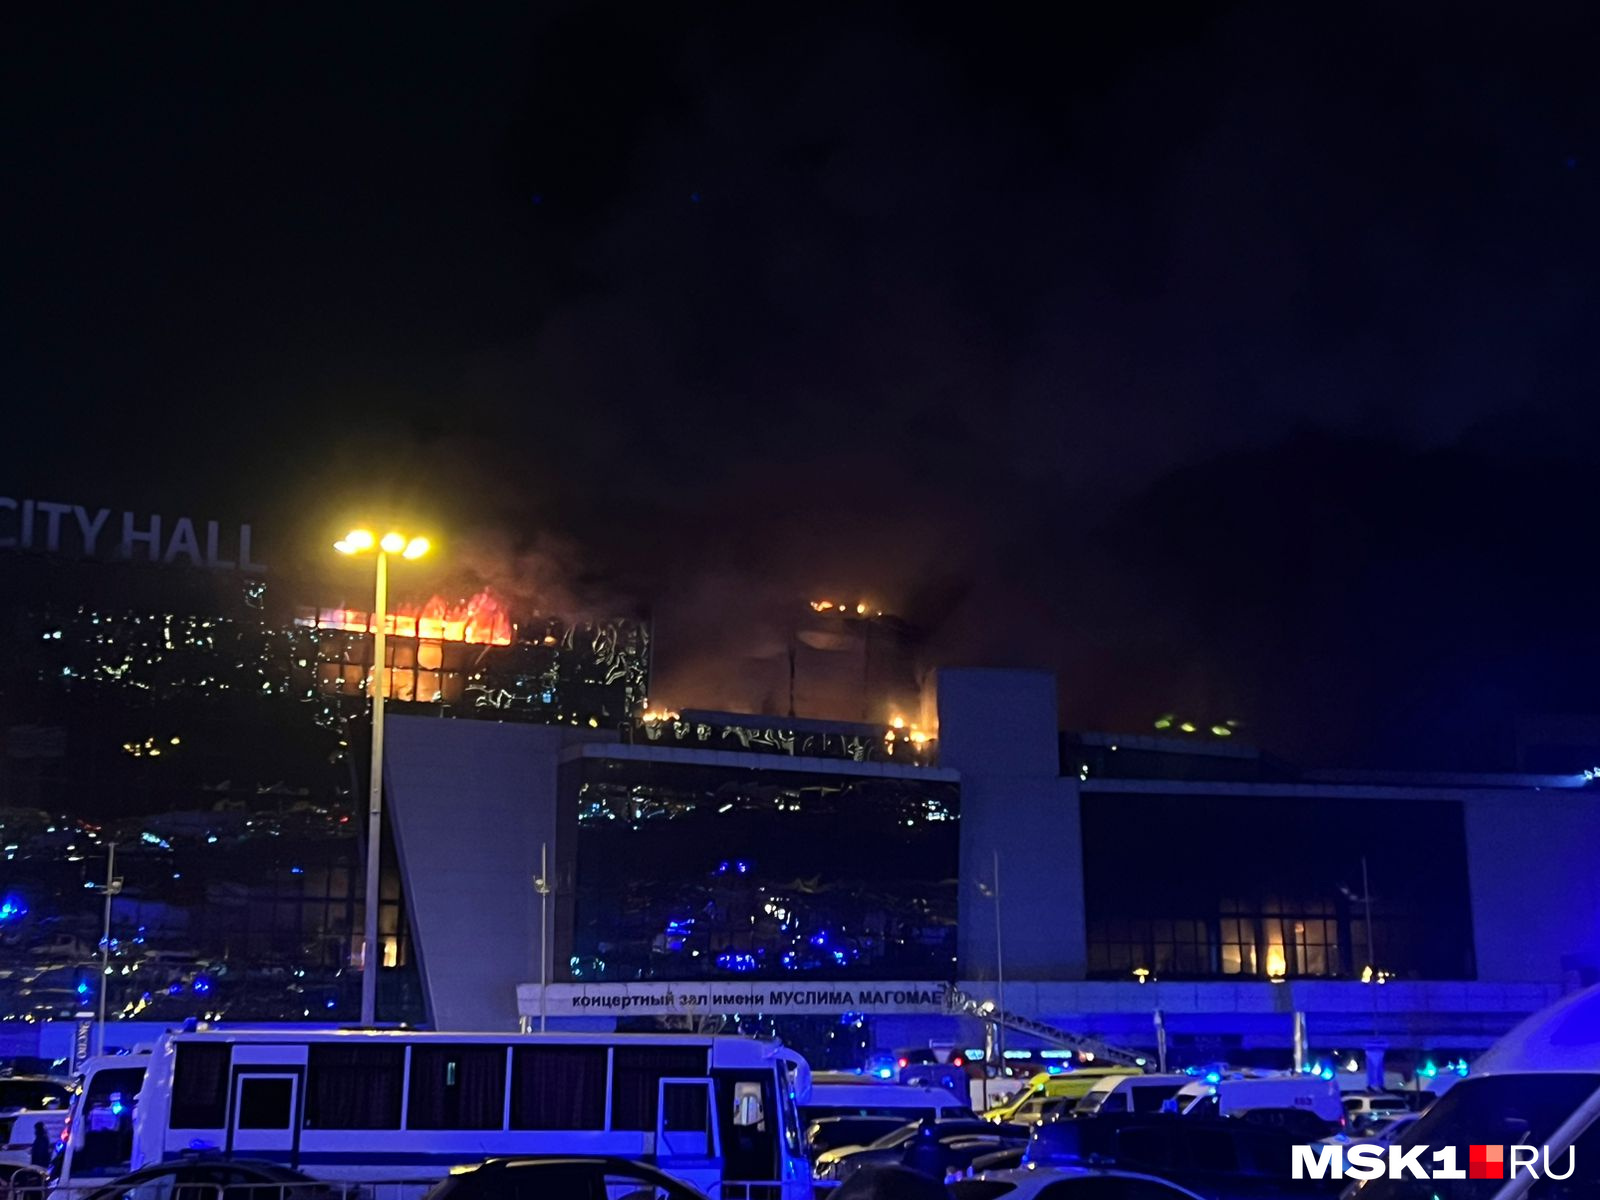 Возбуждено дело о теракте, здание горит. Стрельба и взрыв в Crocus City Hall: онлайн-репортаж